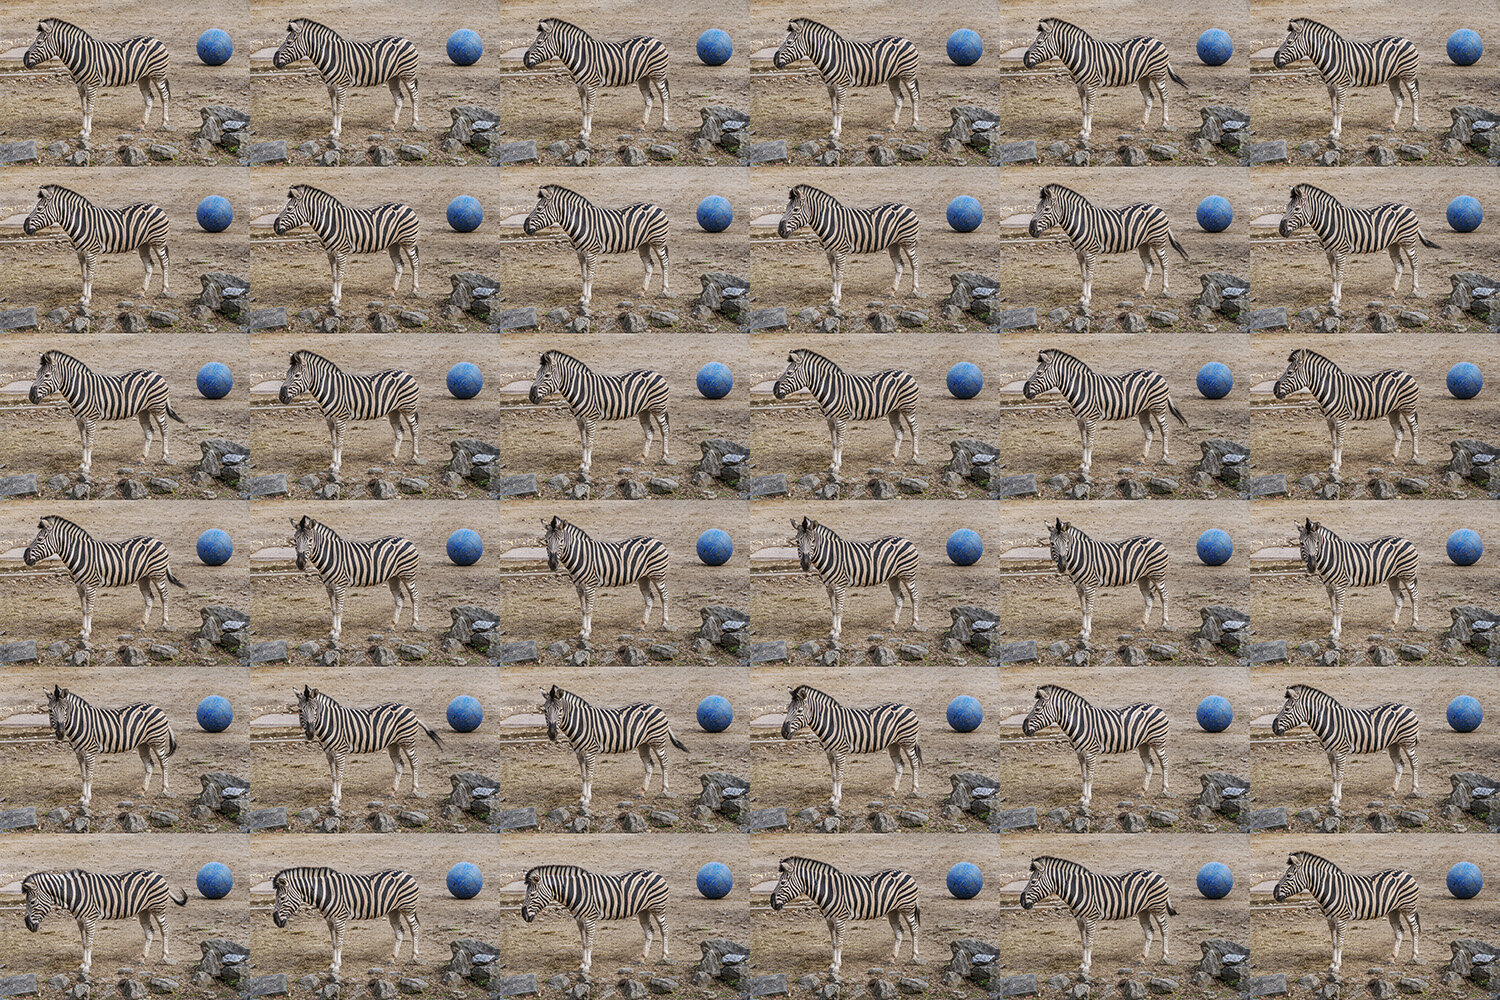 Zoo Zebra X 36 copy.jpg